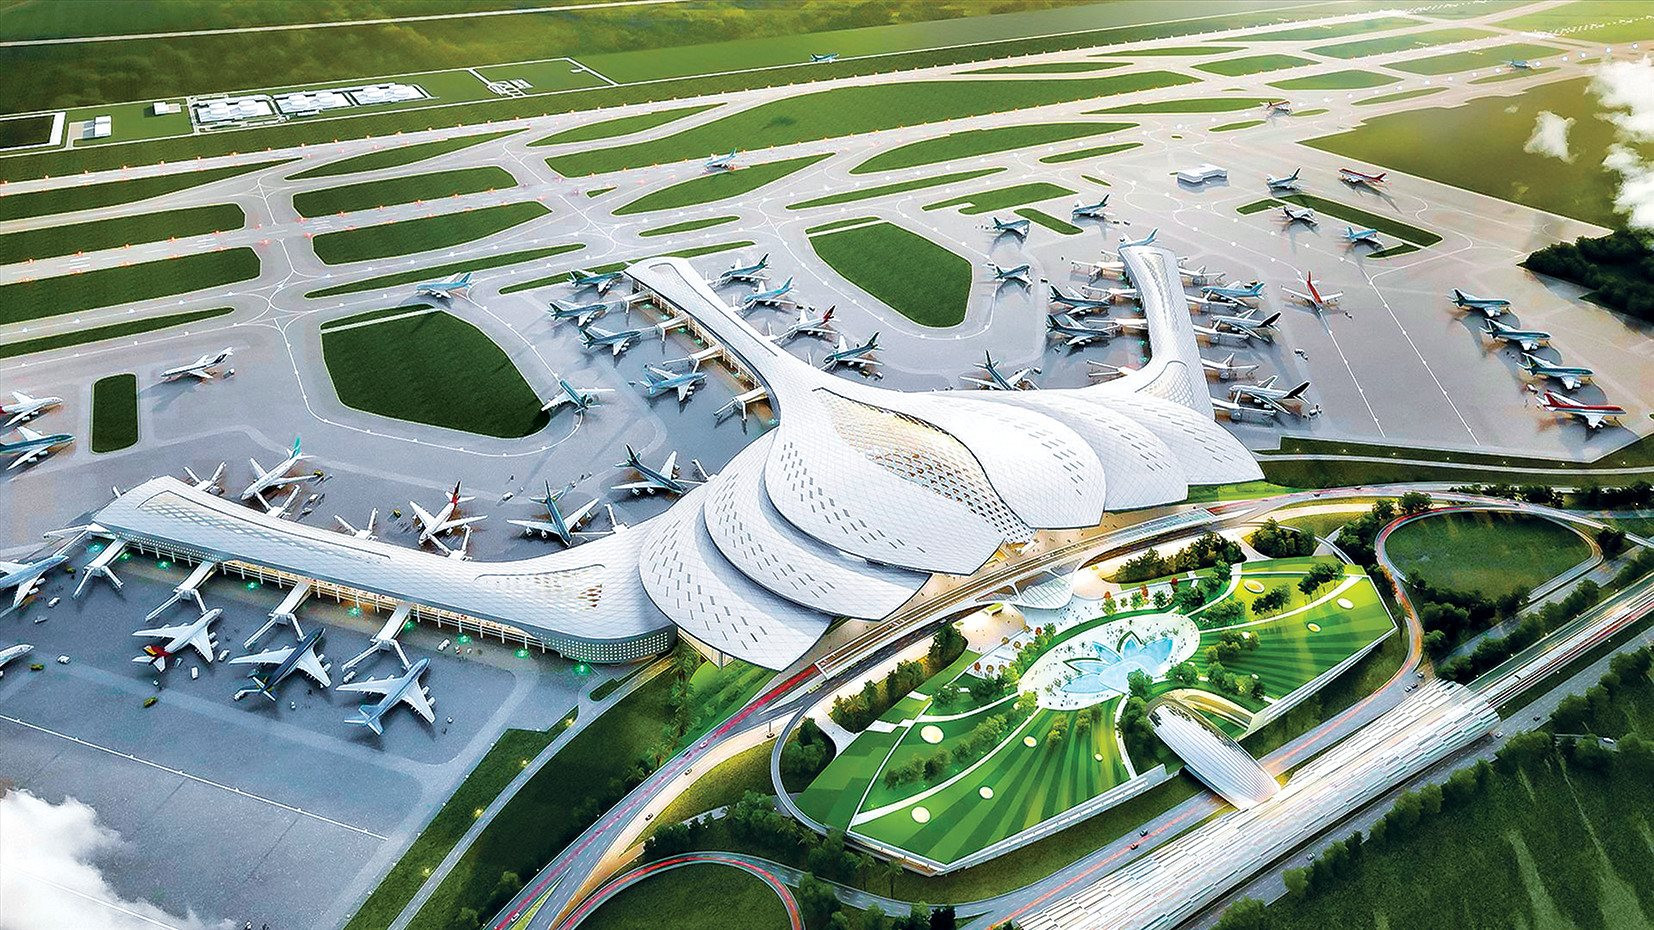 Ngoài Long Thành, Đồng Nai dự kiến quy hoạch thêm ba sân bay